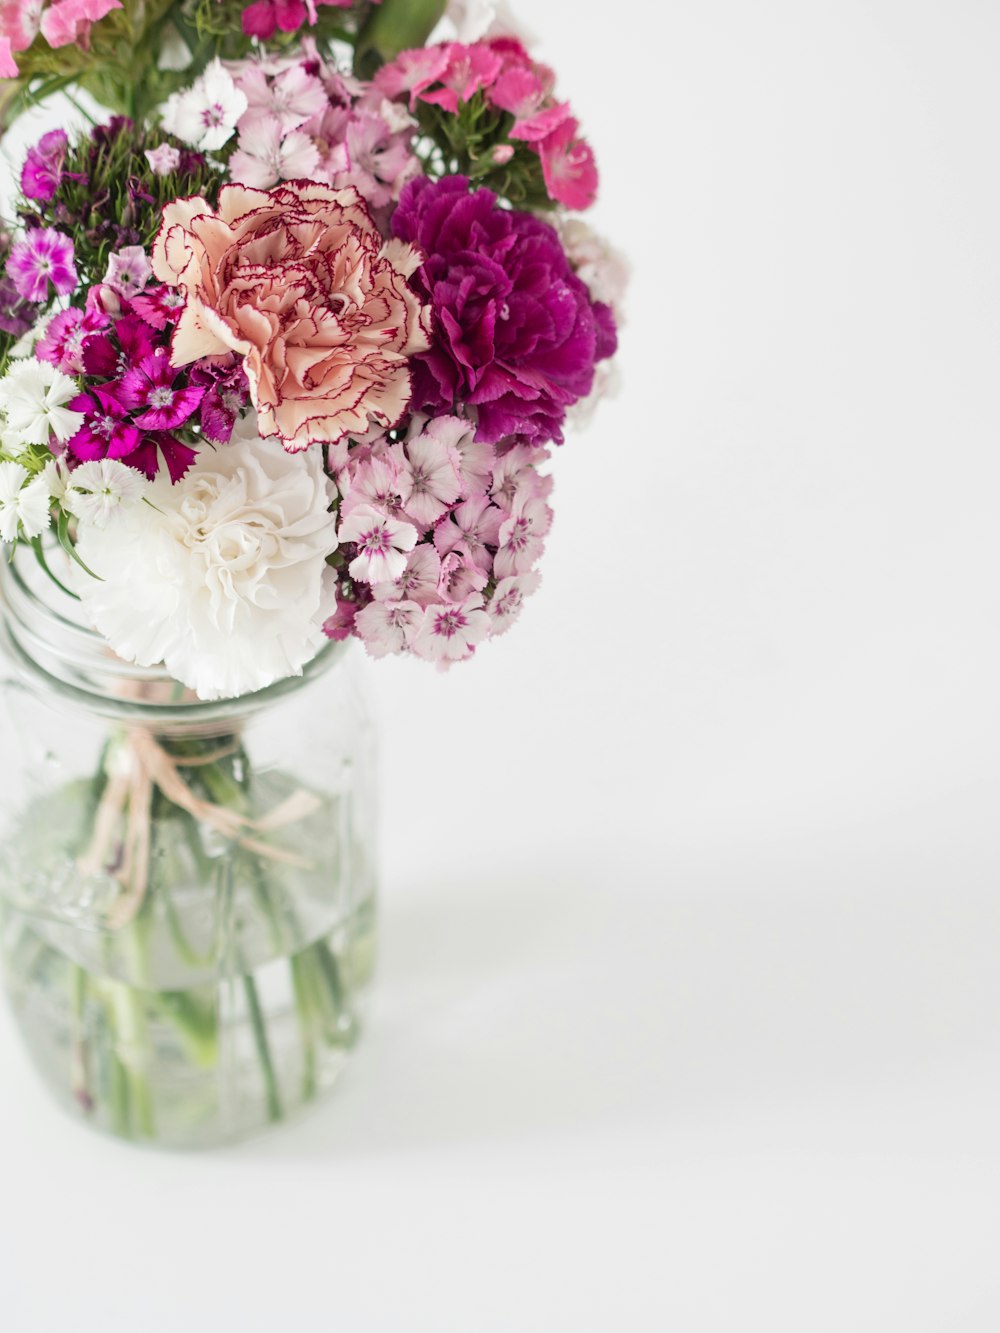 투명 유리 꽃병에 분홍색과 흰색 꽃